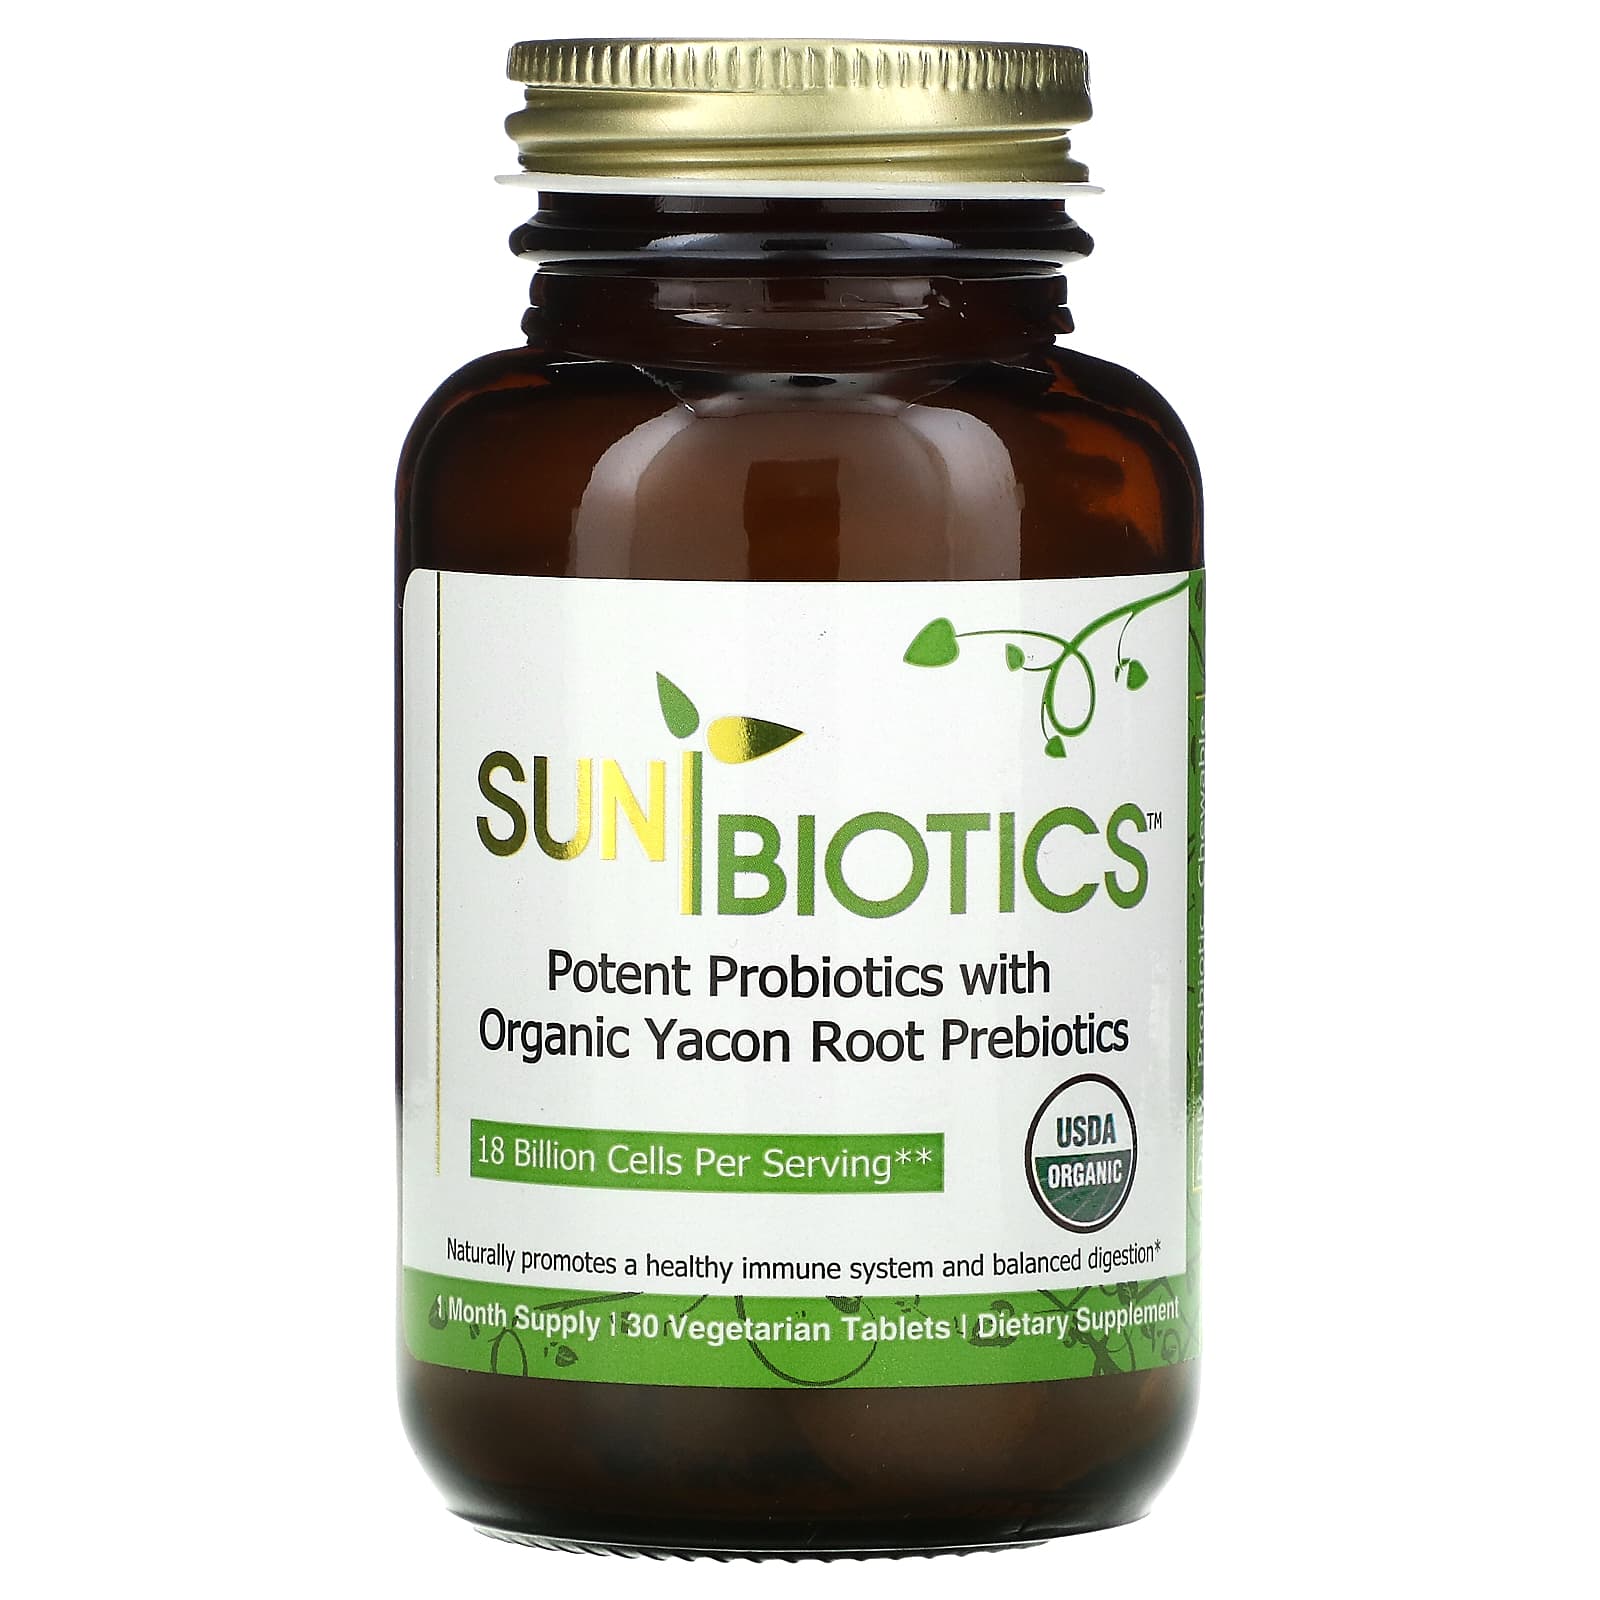 Пробиотики Sunbiotics с органическими пребиотиками корня якона, 30 вегетарианских таблеток sunbiotics сильные пробиотики с органическими пребиотиками корня якона 30 вегетарианских таблеток